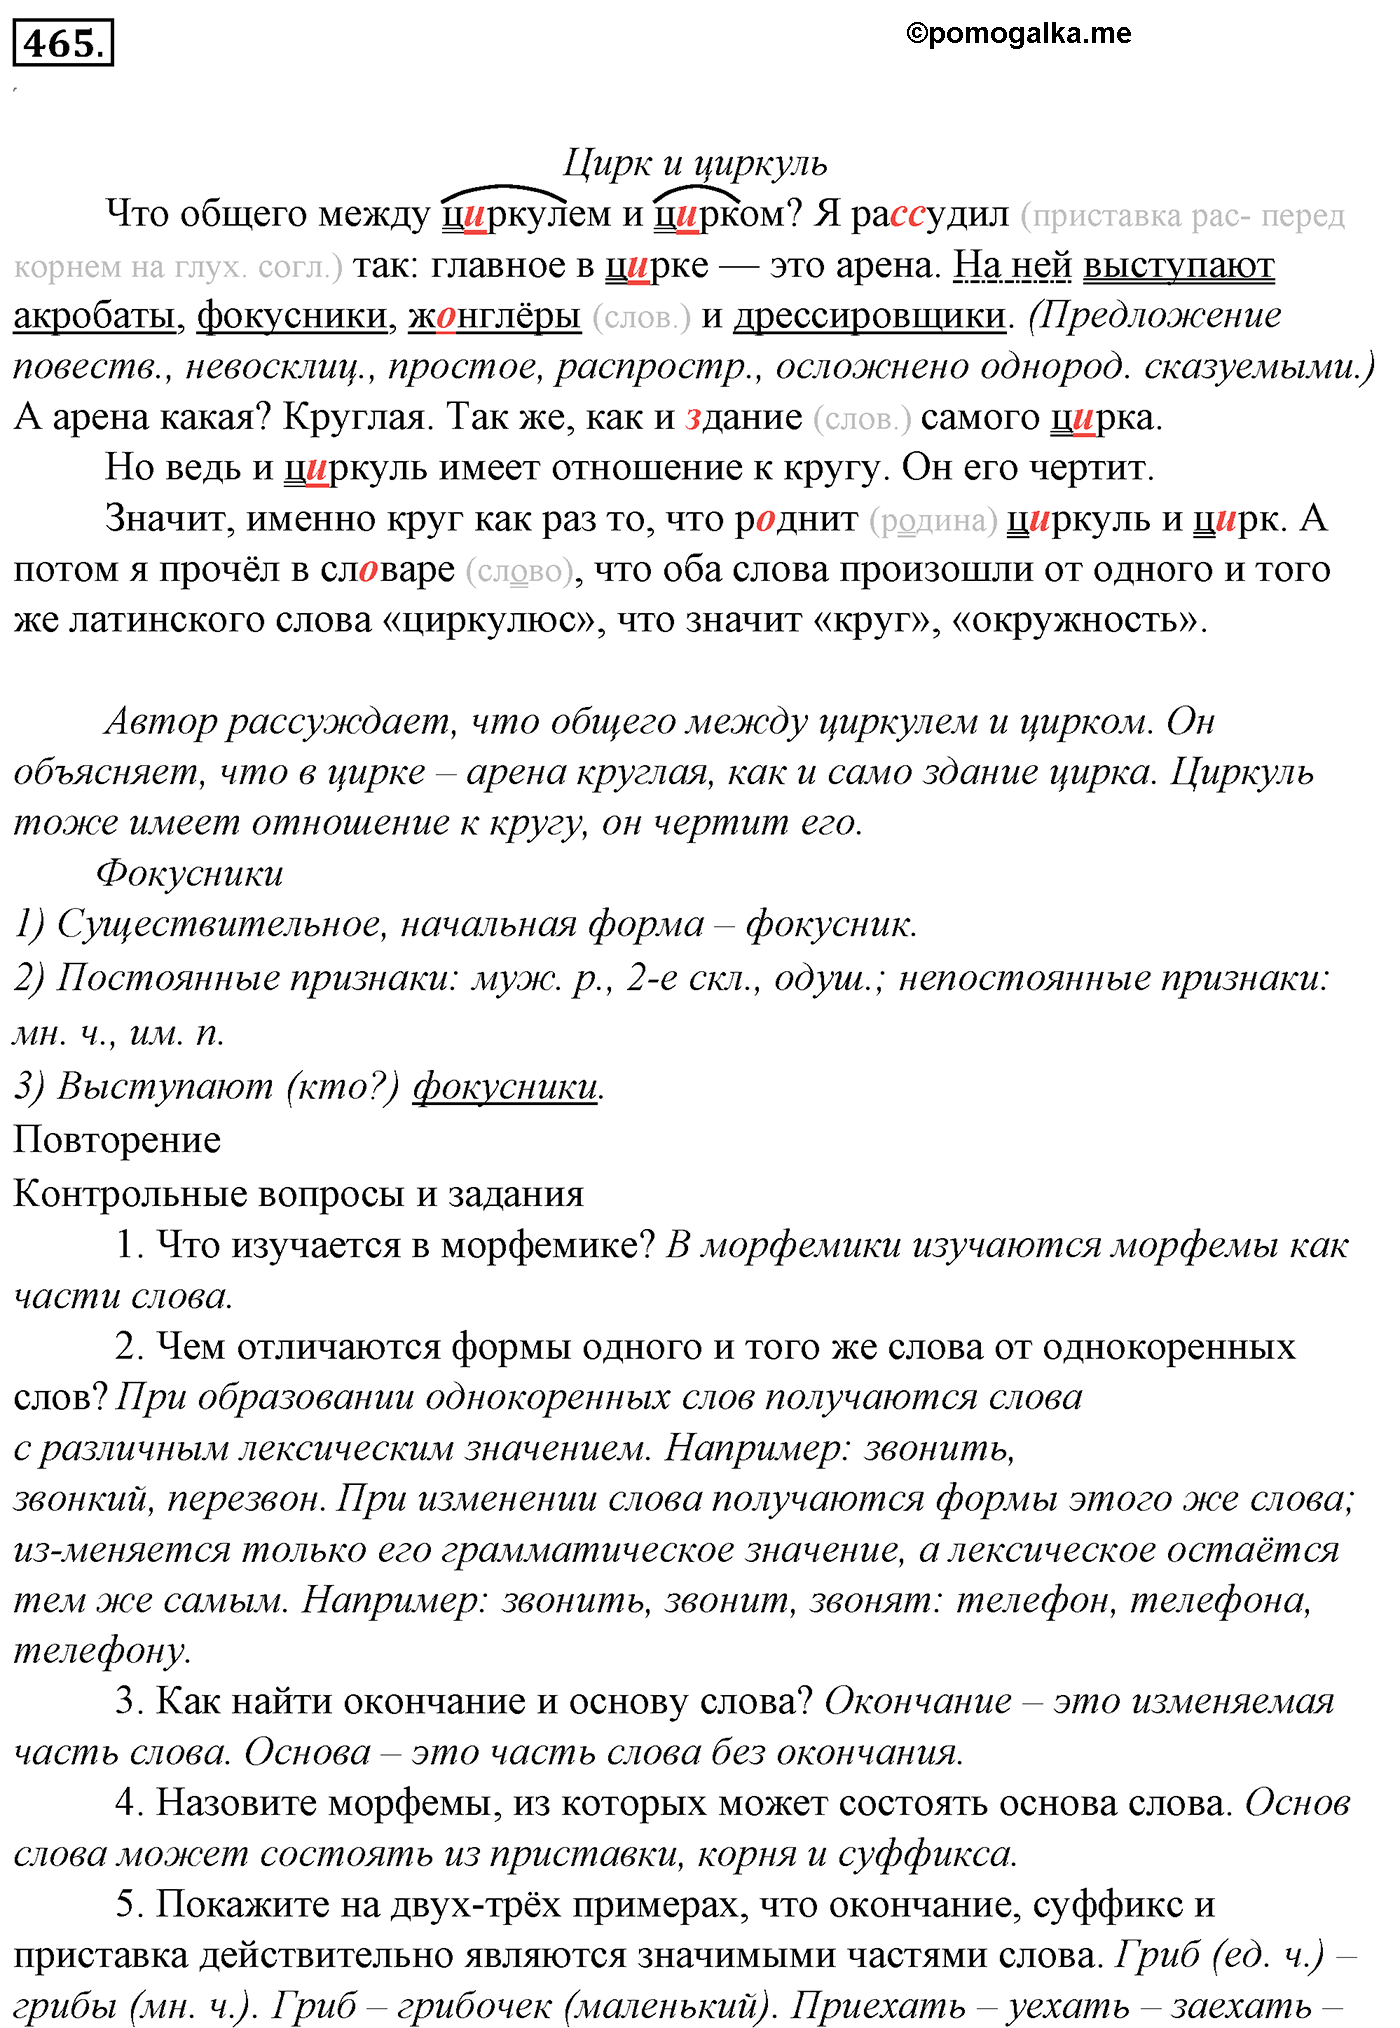 номер 465 русский язык 5 класс Ладыженская, Баранов, Тростенцова 2012 год